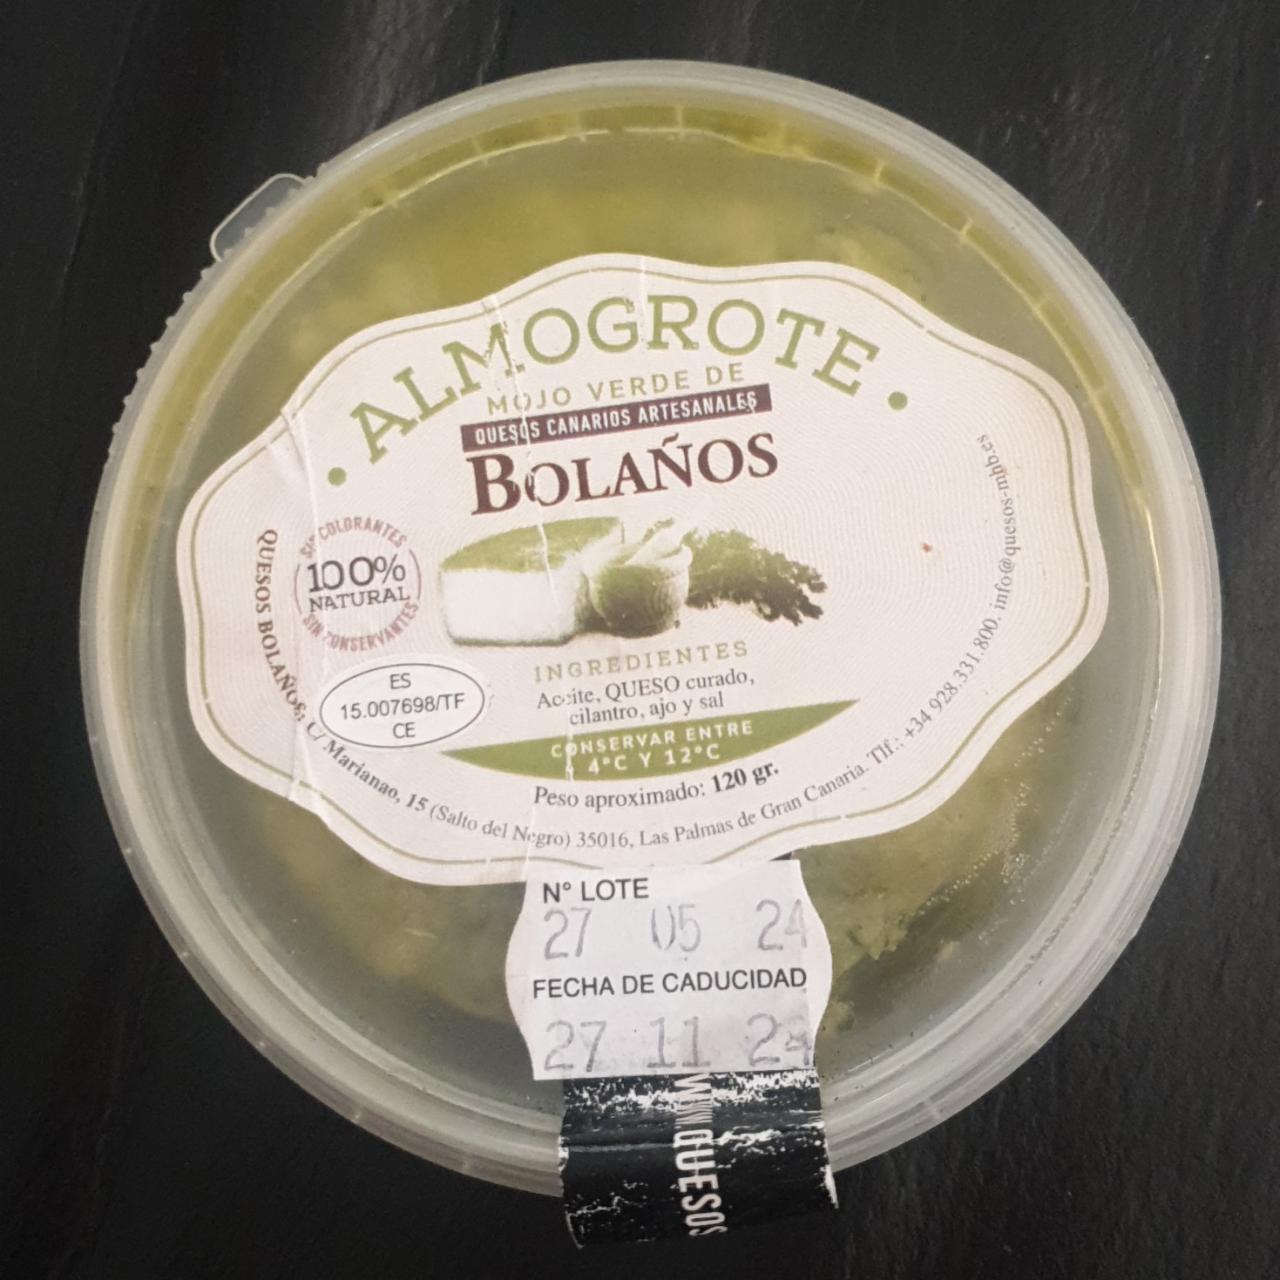 Fotografie - Almogrote mojo verde de quesos canarios artesanales Bolaños